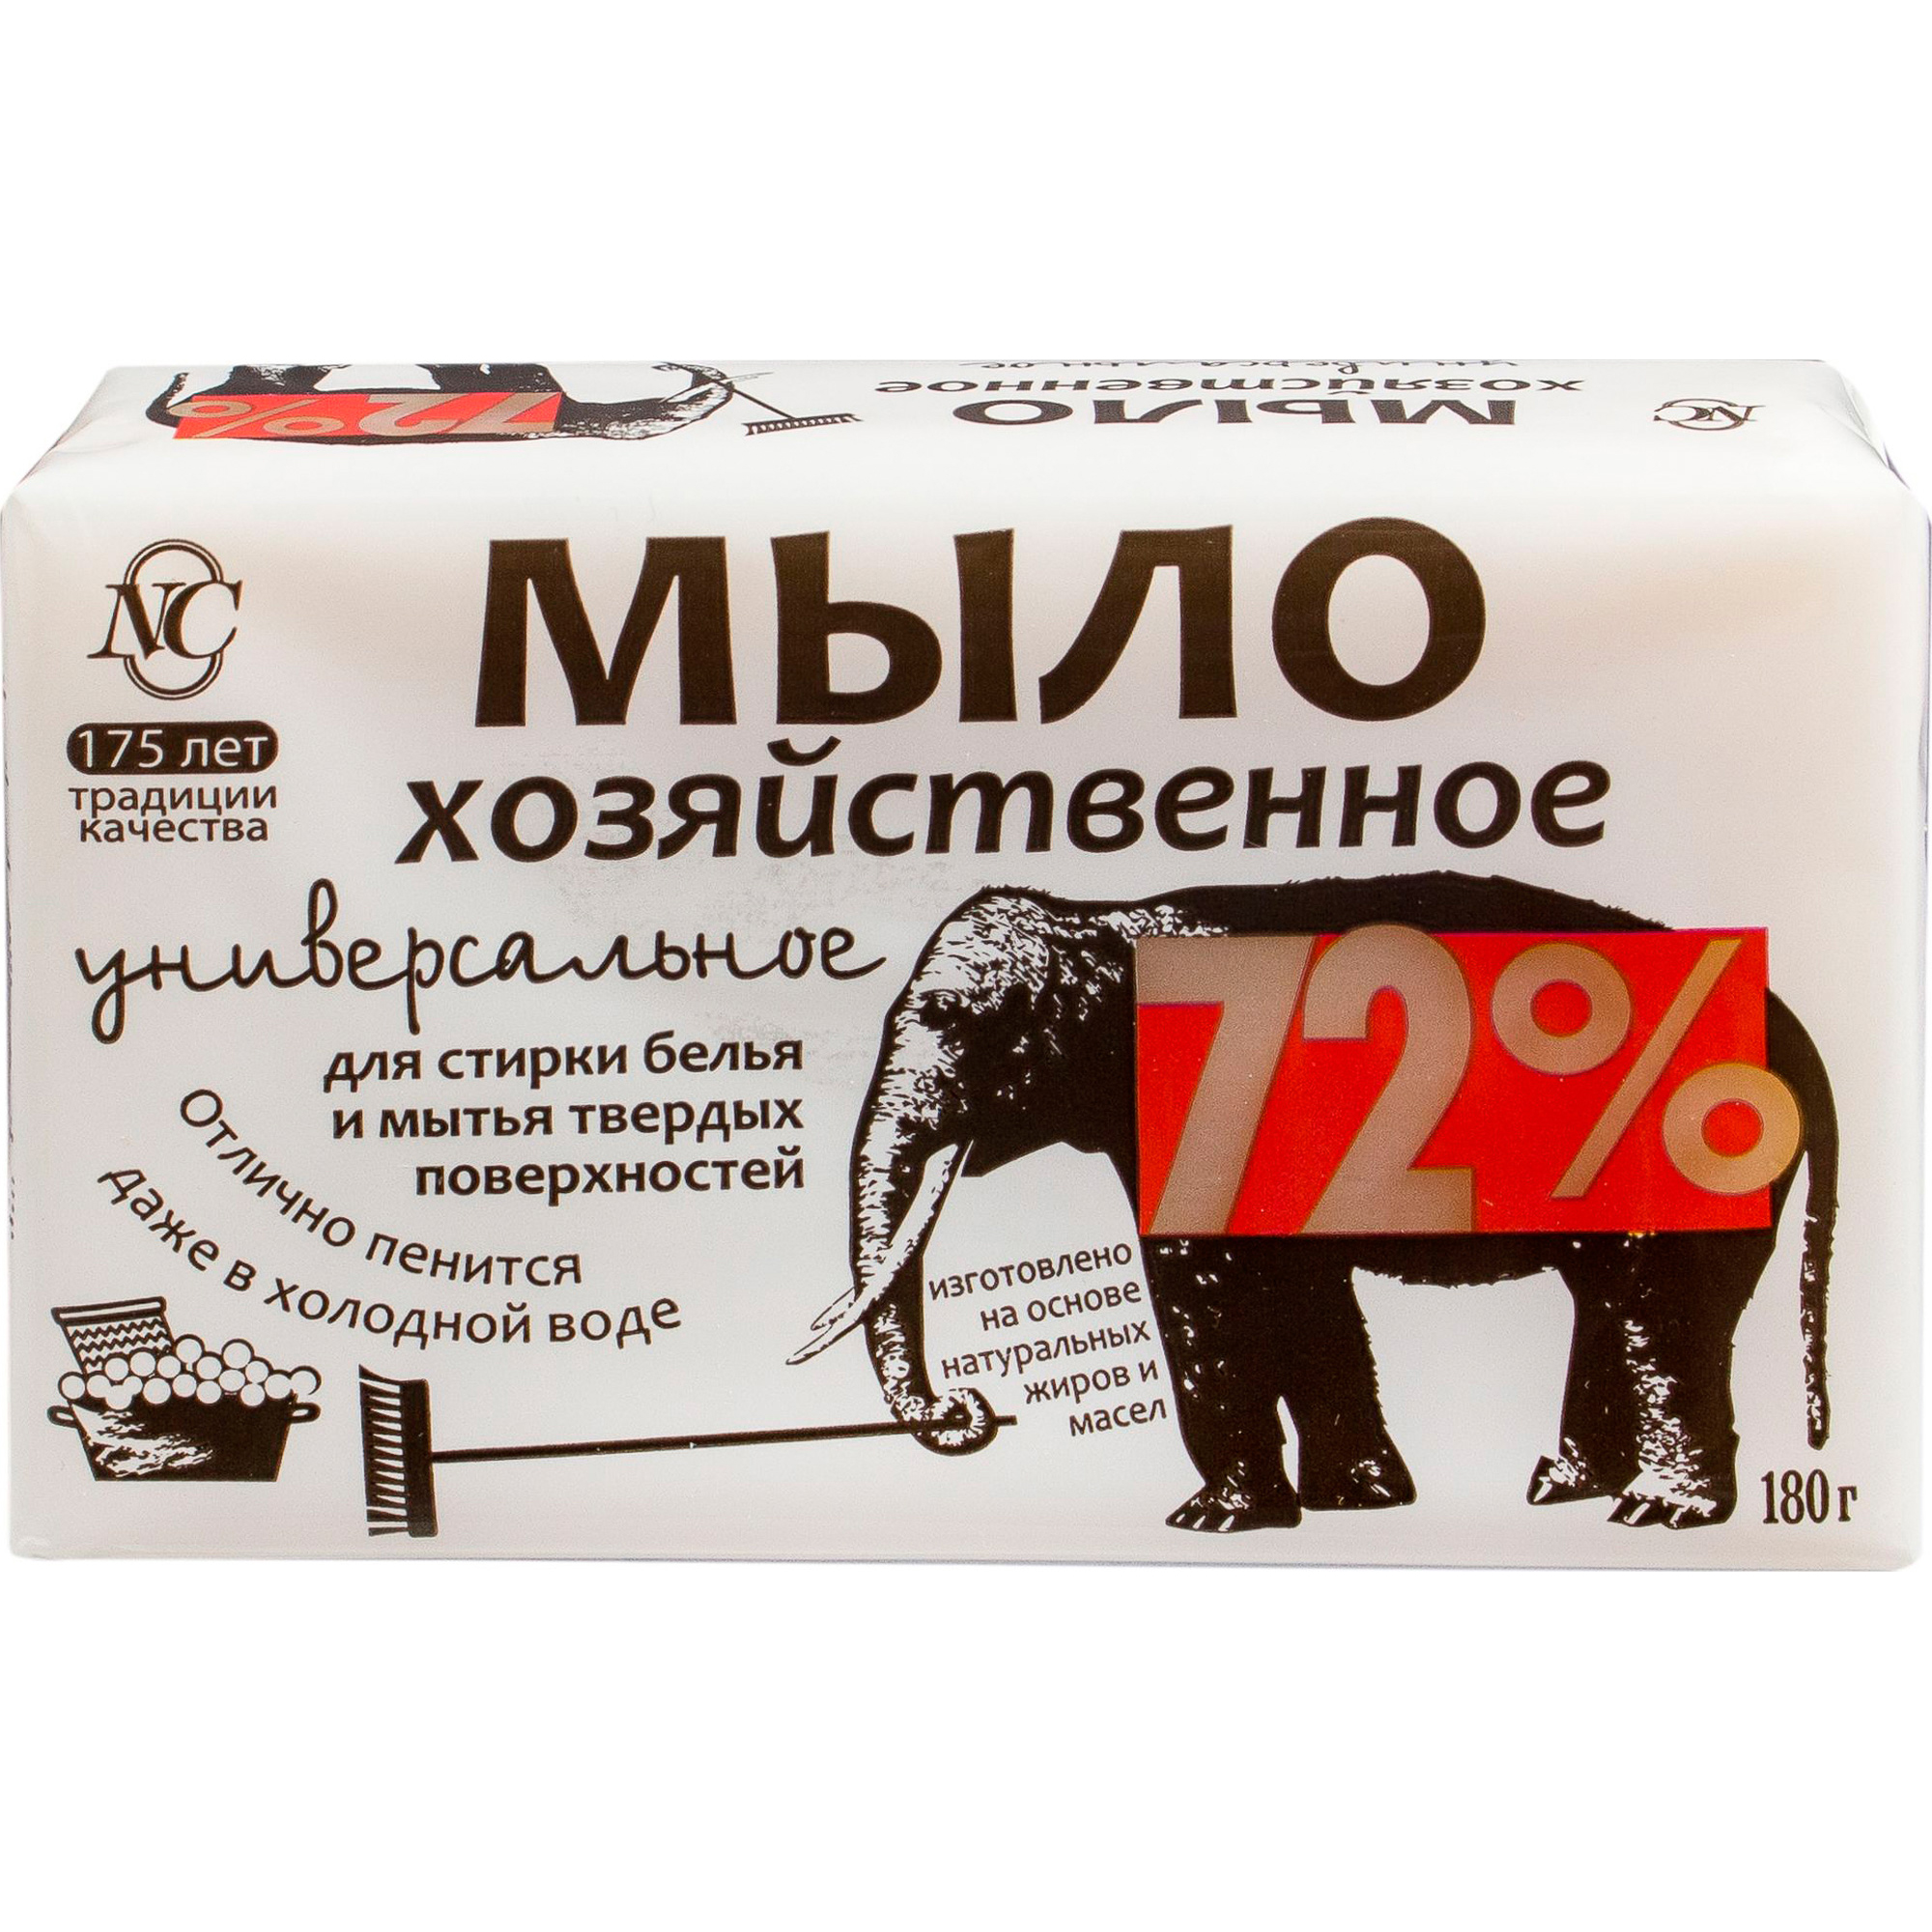 Хозяйственное мыло Невская Косметика Универсальное 72% 180 г мыло хозяйственное гомельский жировой комбинат 72% 250 г